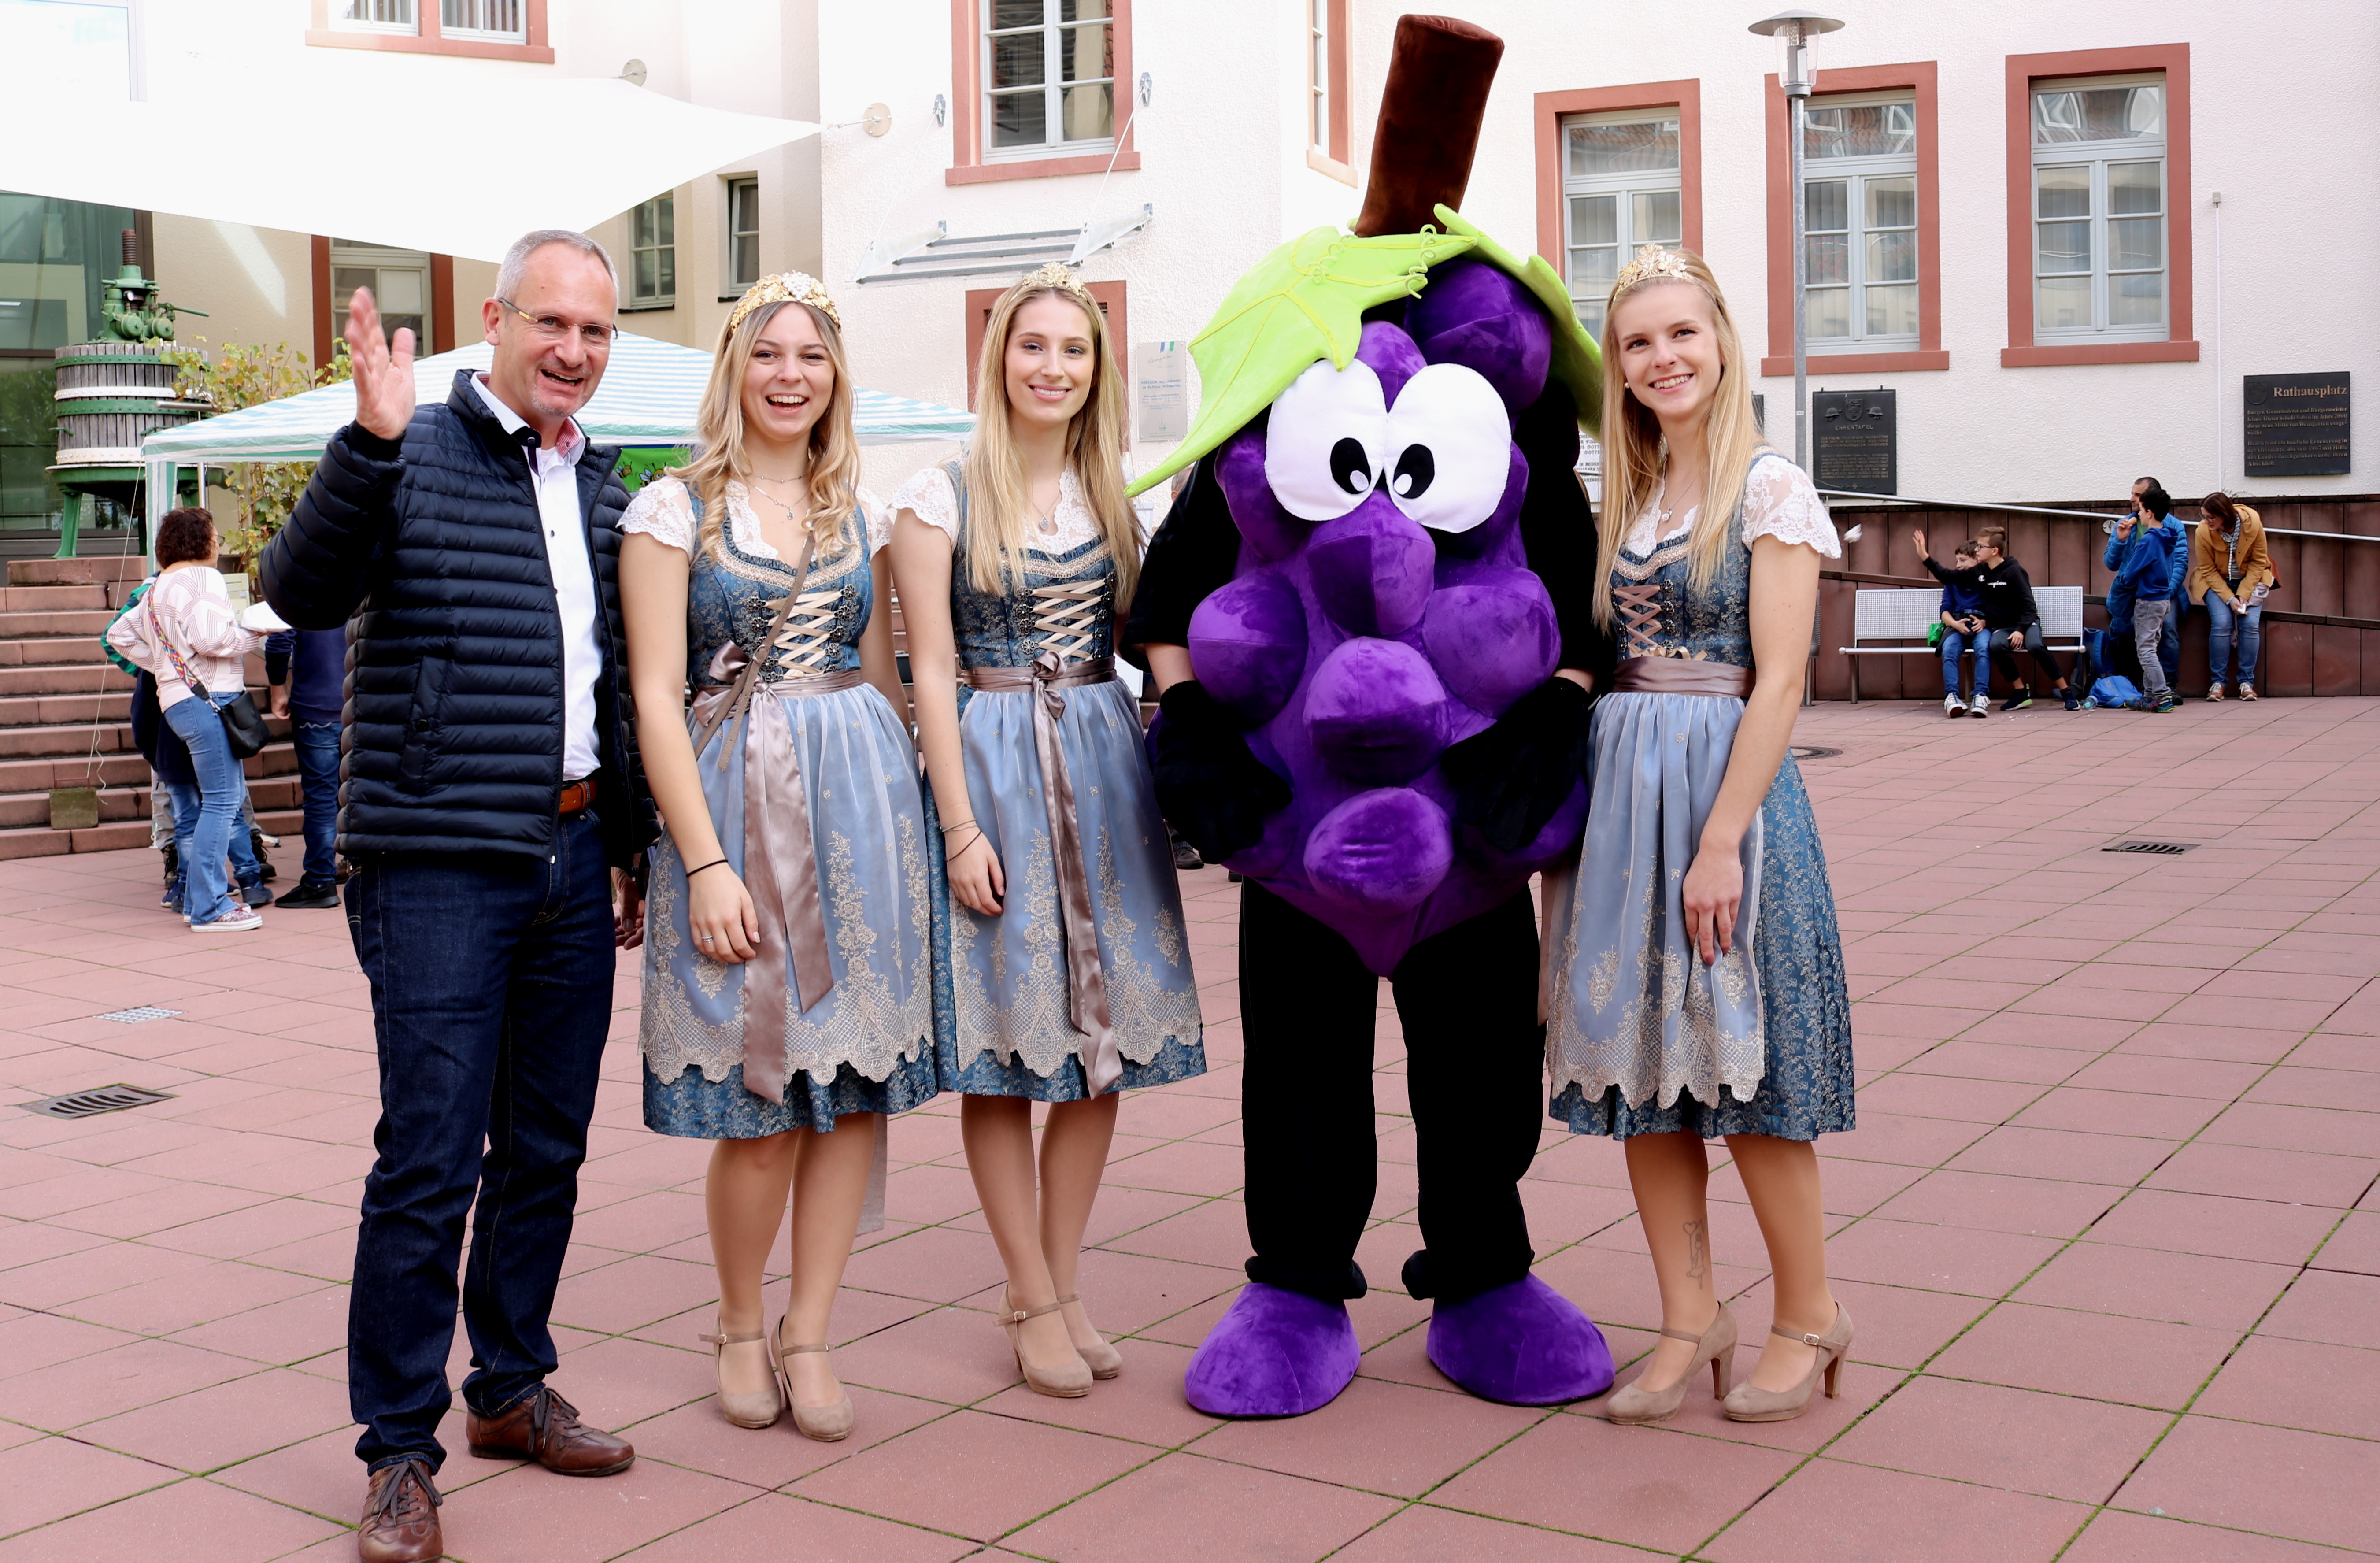  Bürgermeister Eric Bänziger gemeinsam mit den Weinhoheiten und dem Maskottchen Träuble 